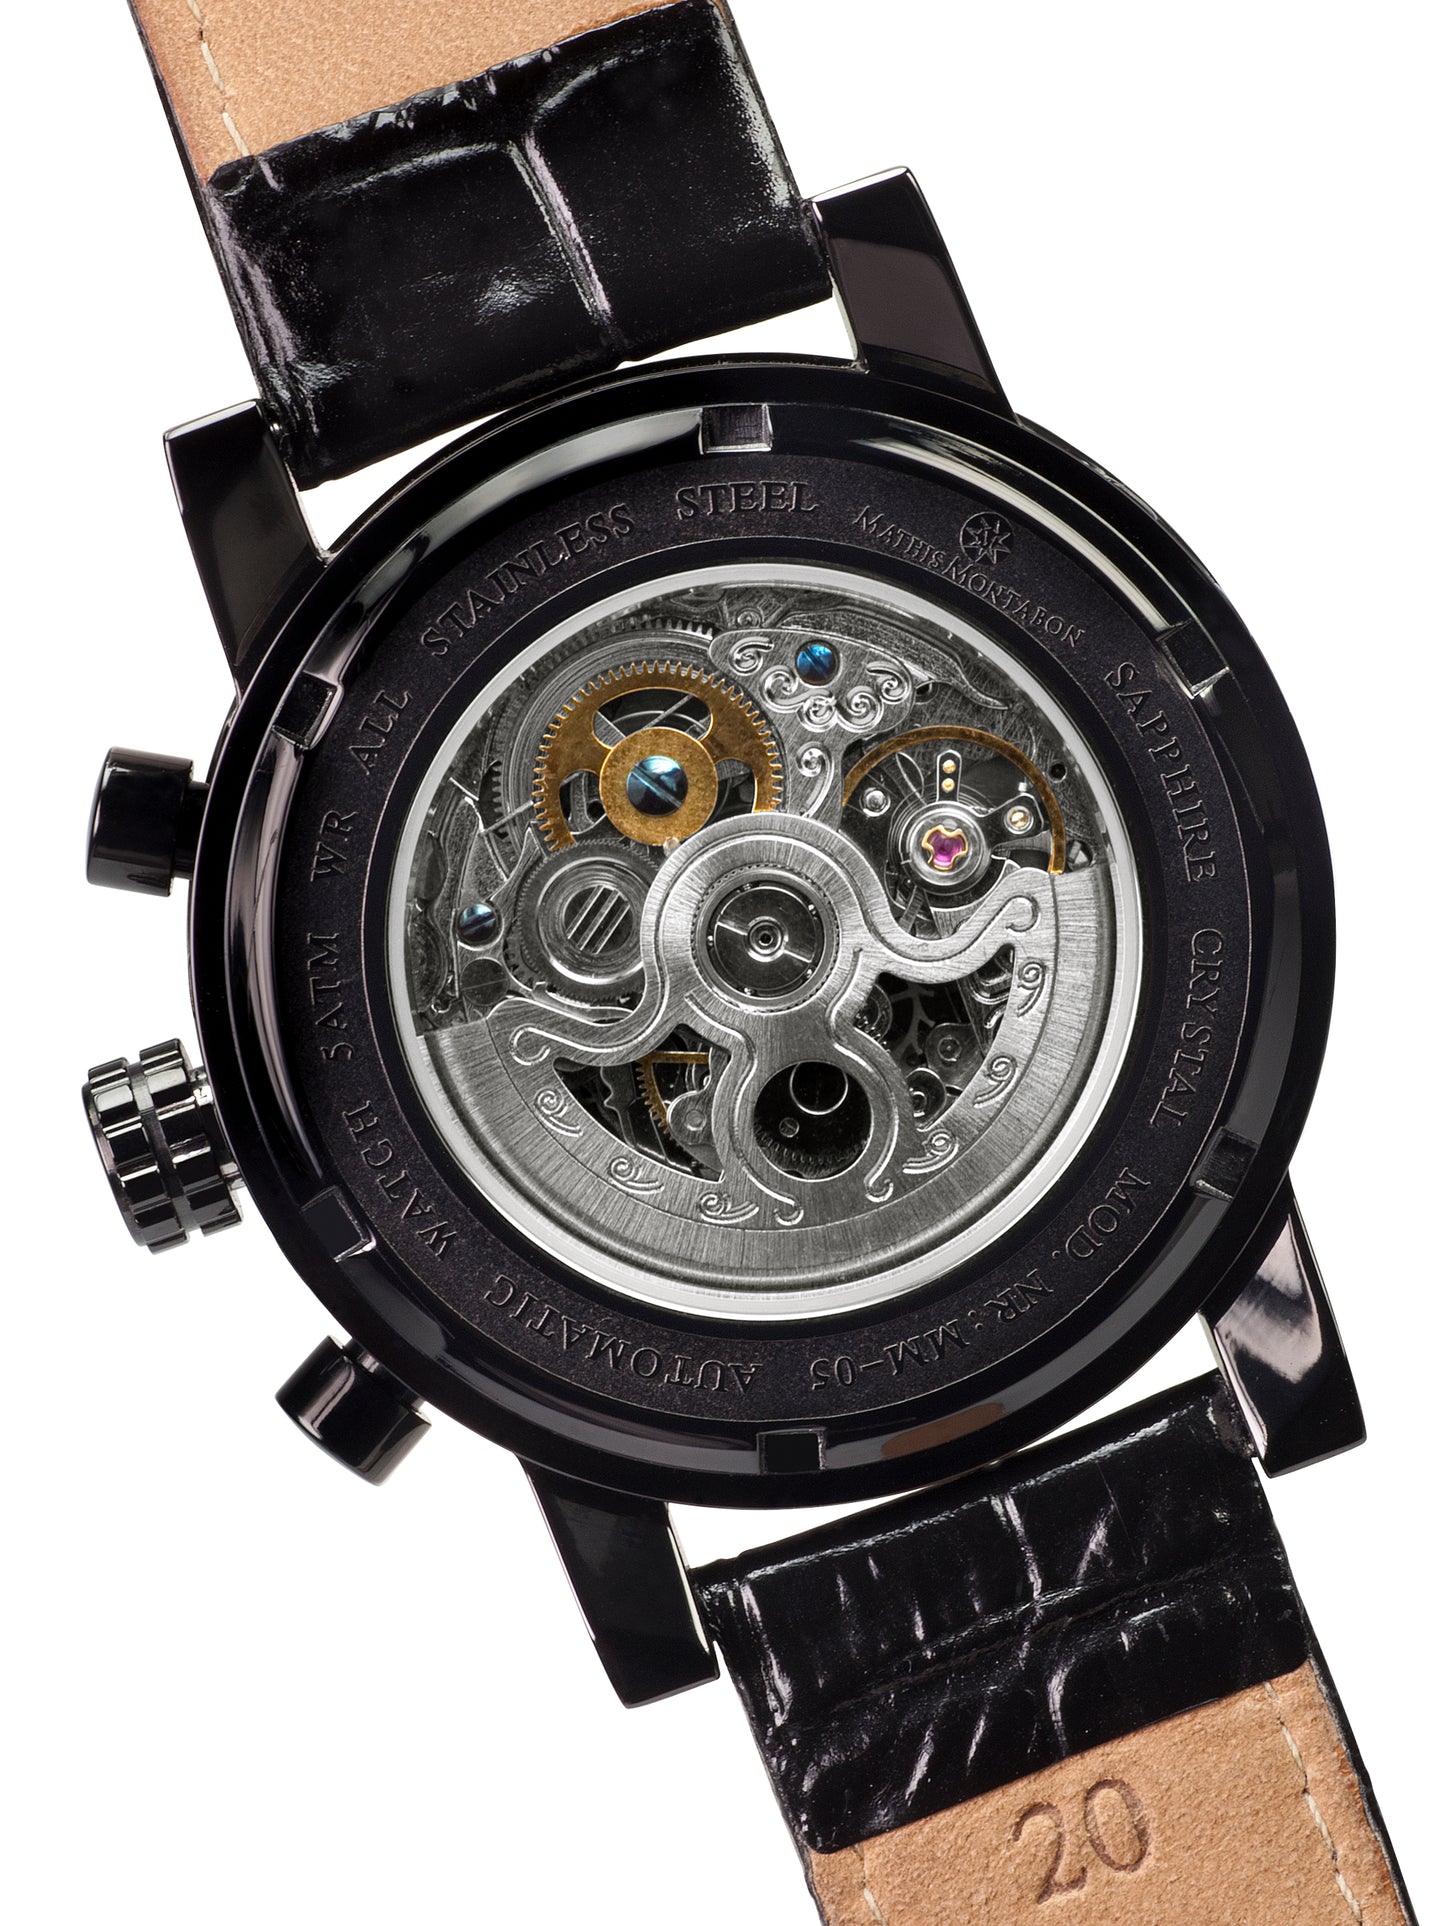 Automatic watches — Squelette — Mathis Montabon — IP schwarz